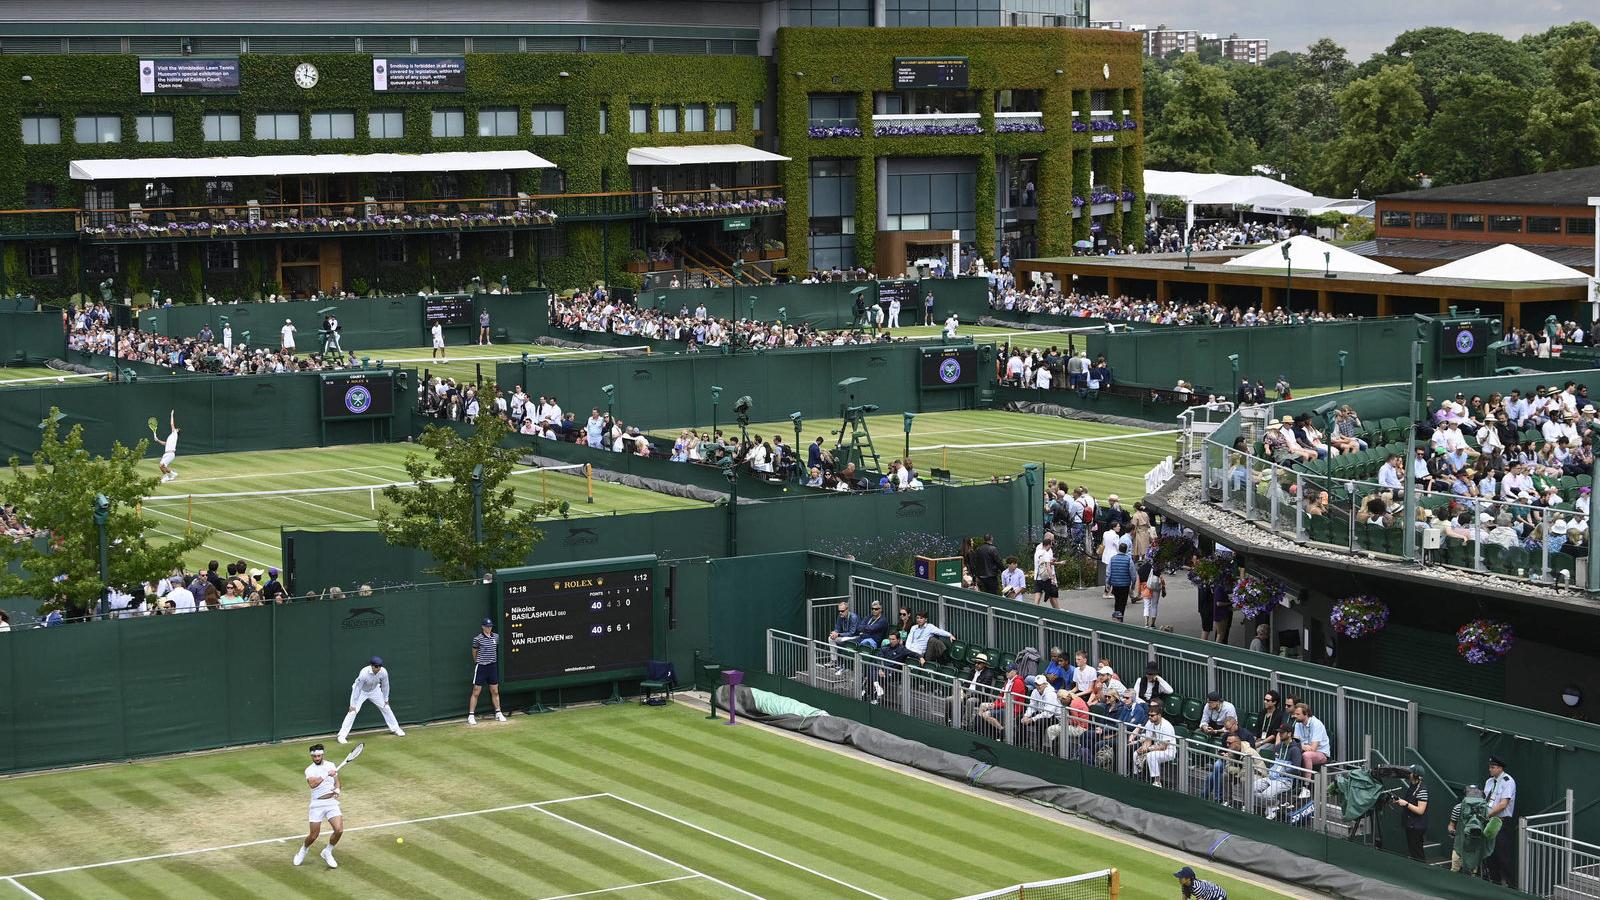 Saiba onde assistir o Torneio de Tênis de Wimbledon - TecMundo